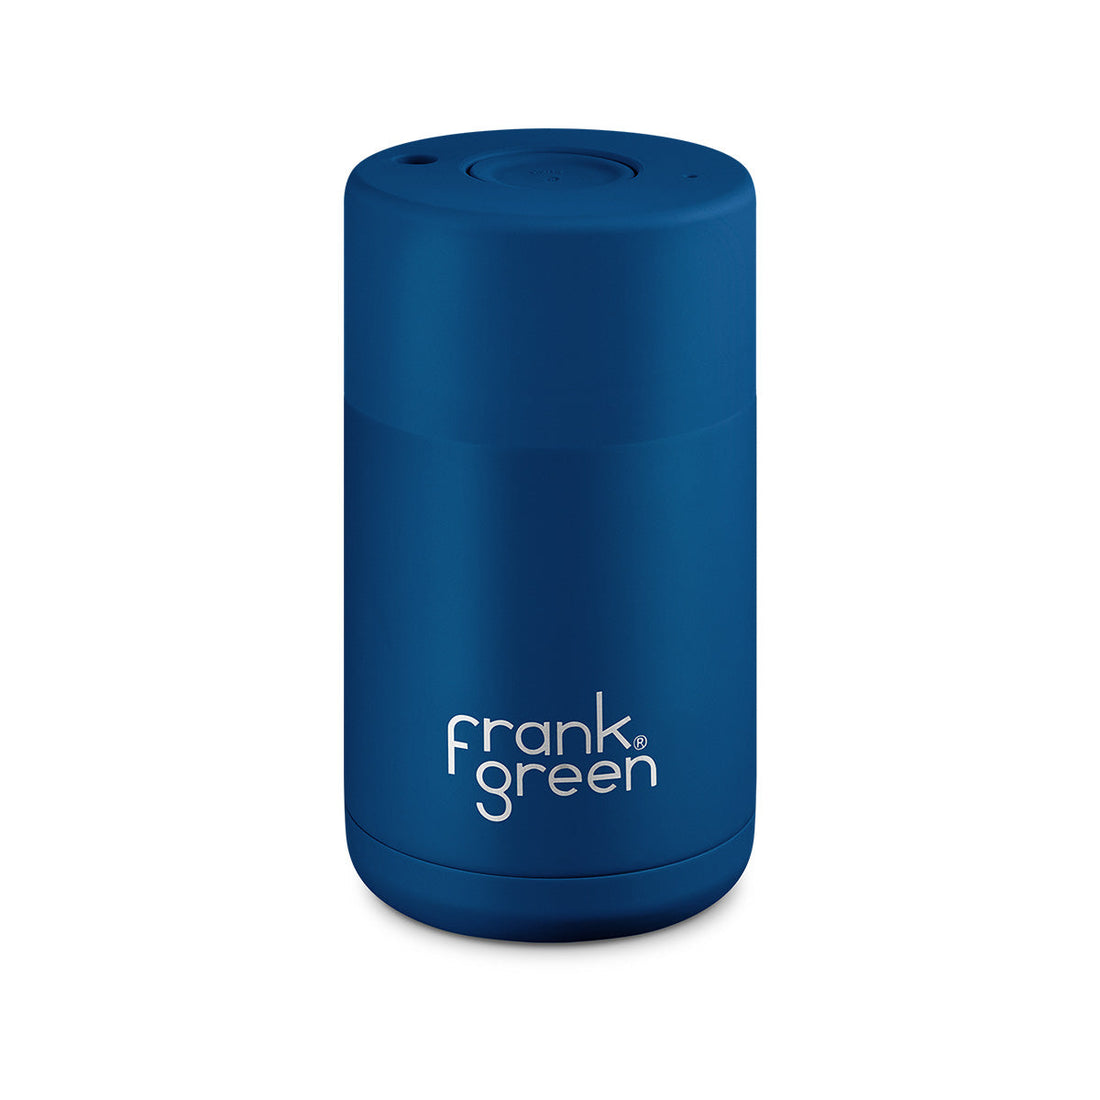 Frank Green, Frank Green 10oz/295ml Ceramic Reusable Cup - Deep Ocean, Redber Coffee